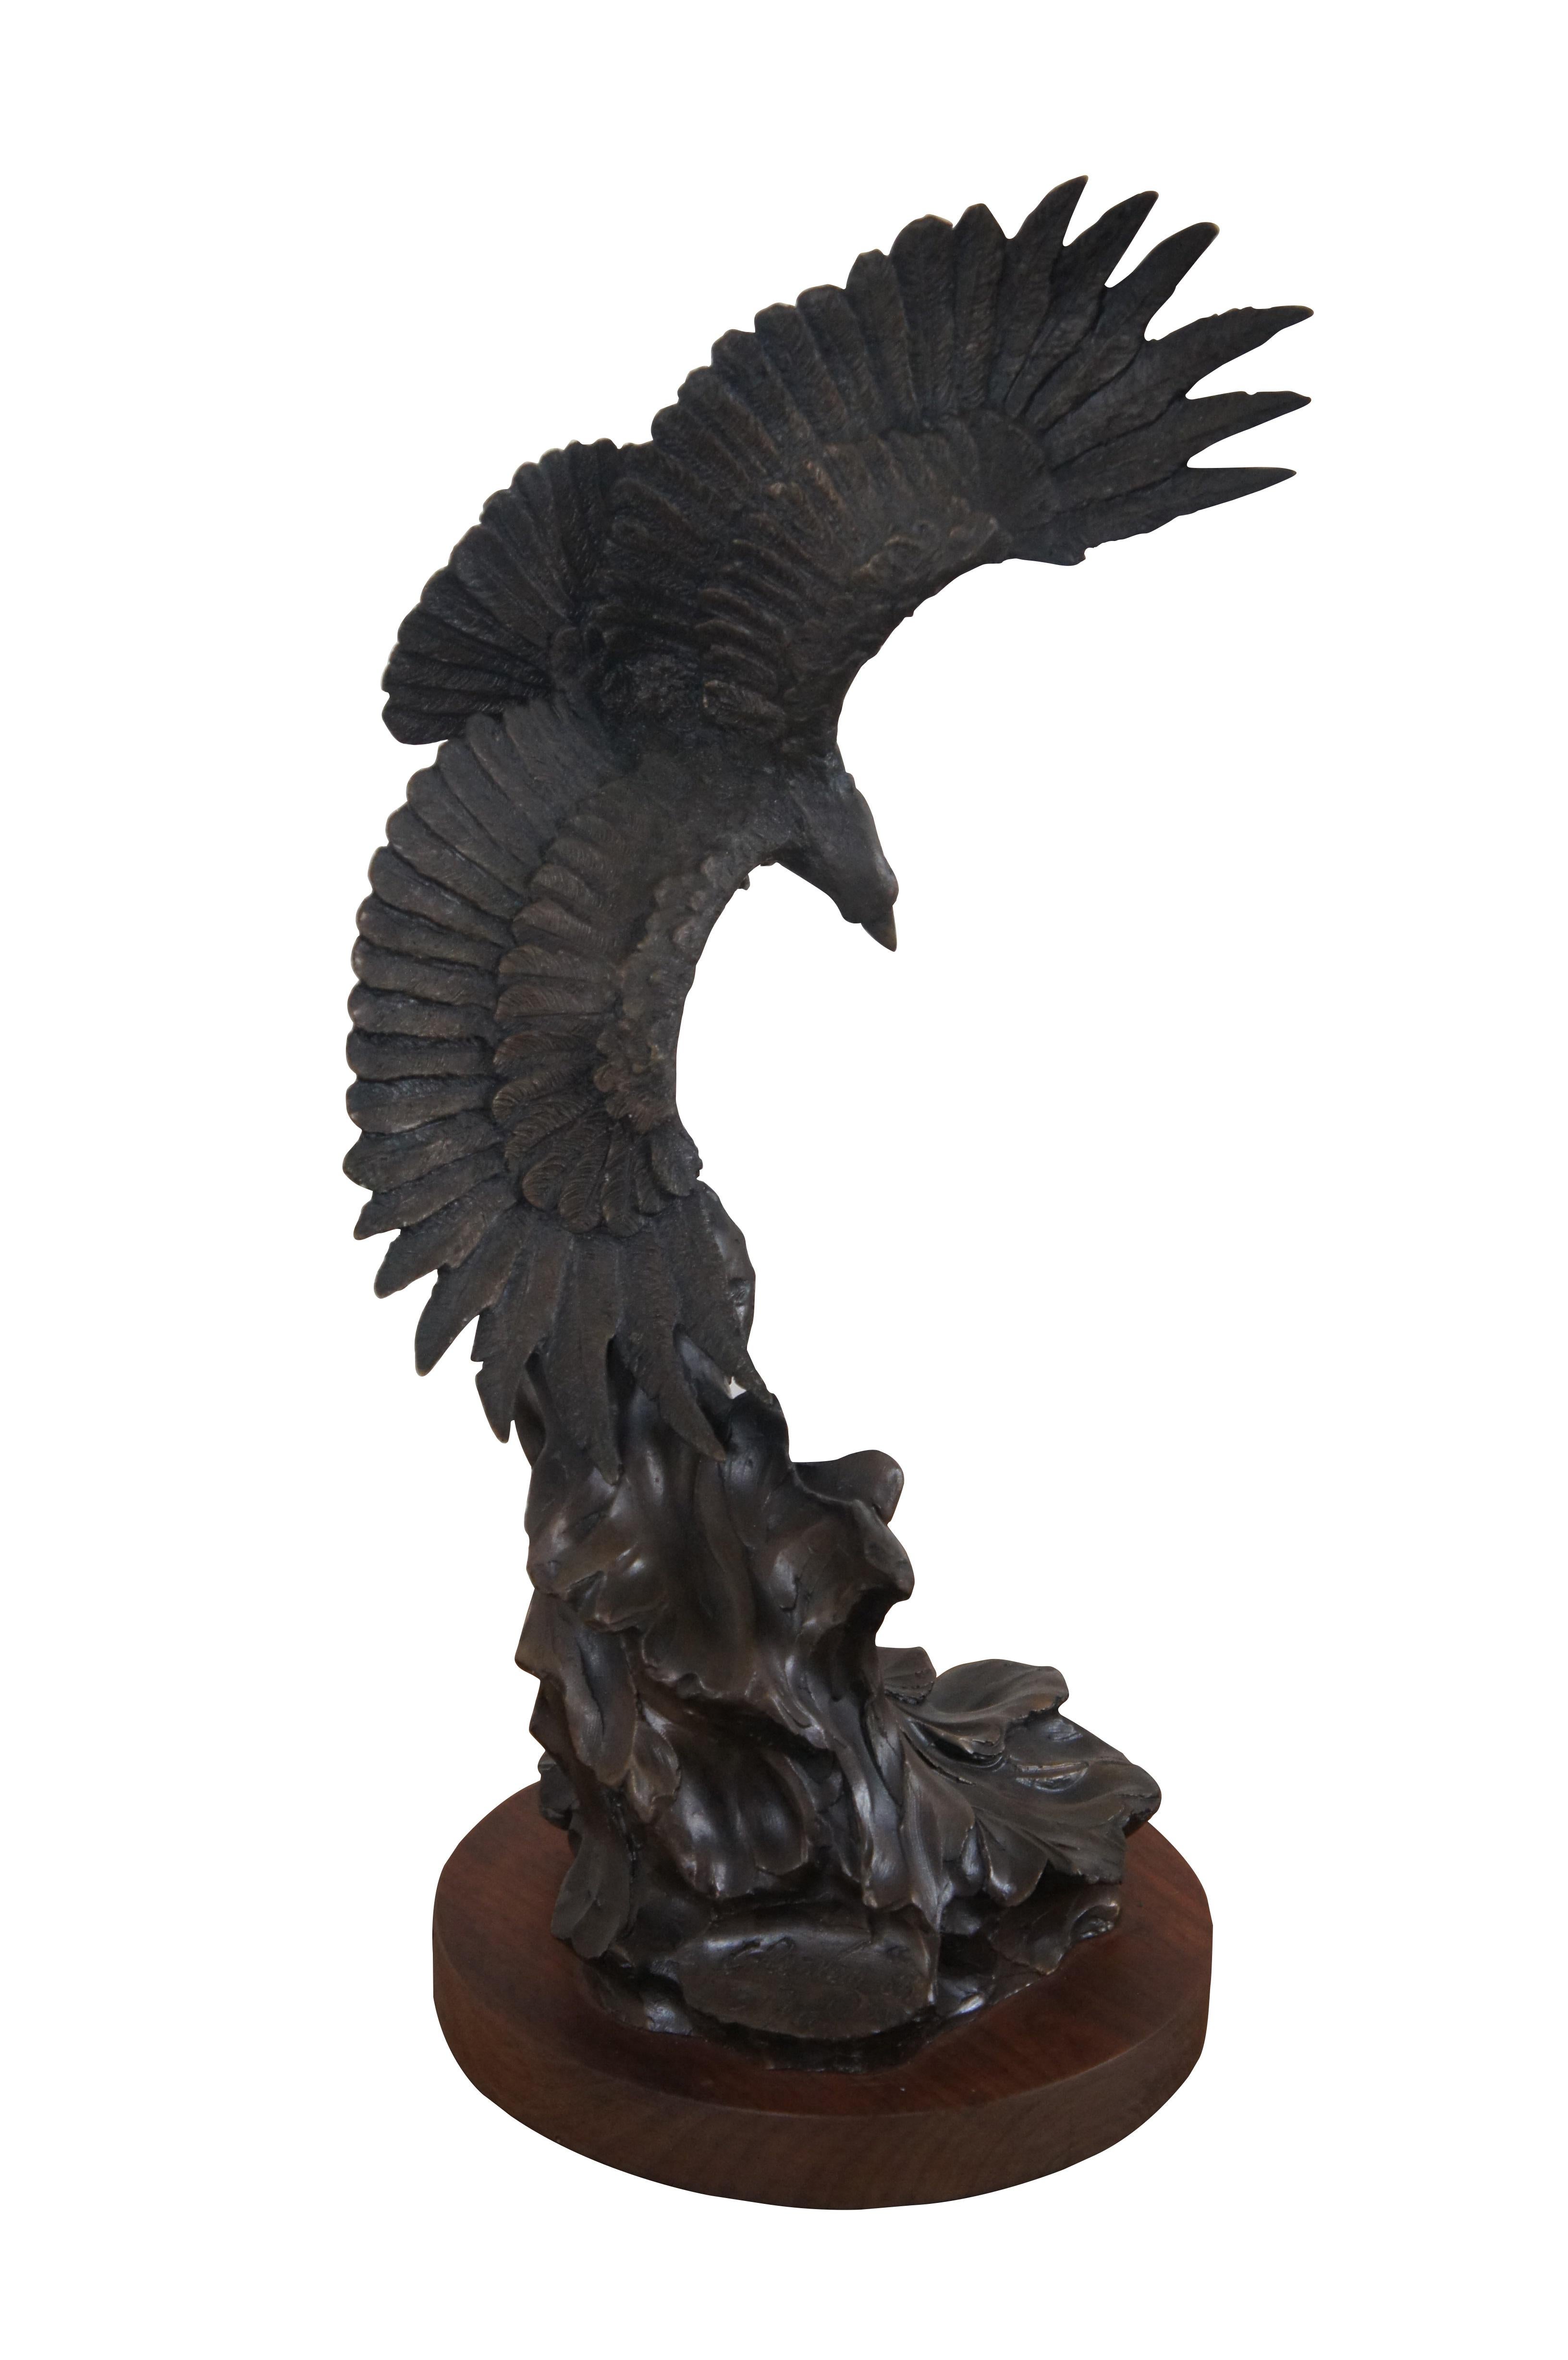 Sculpture vintage en bronze représentant un pygargue à tête blanche / faucon / oiseau américain aux détails réalistes s'élançant au-dessus de vagues abstraites, montée sur une base ronde en bois. Signé sur la base C.I. C. Van 1983. Numéroté